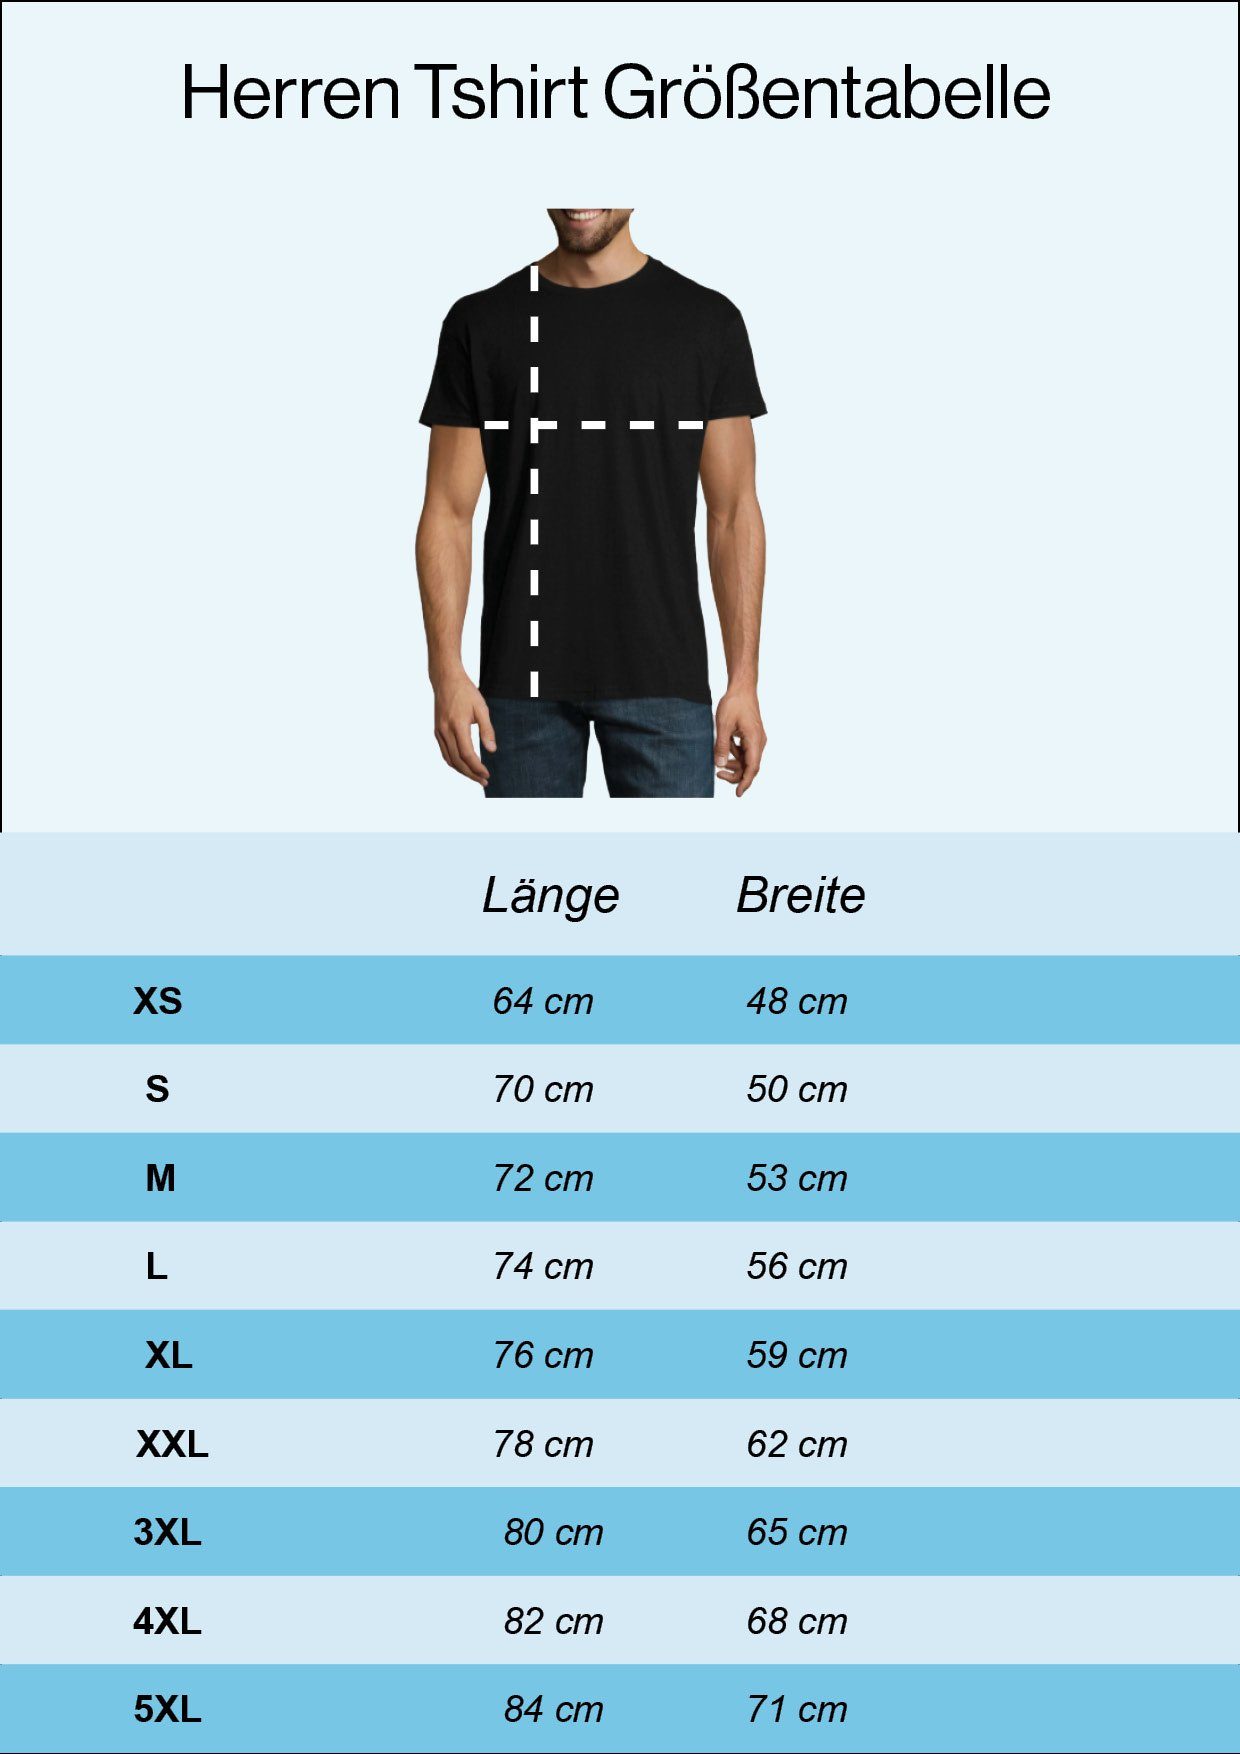 Herren Frontprint Sangre Schwarz T-Shirt Youth mit Sangre Por Shirt Designz trendigem